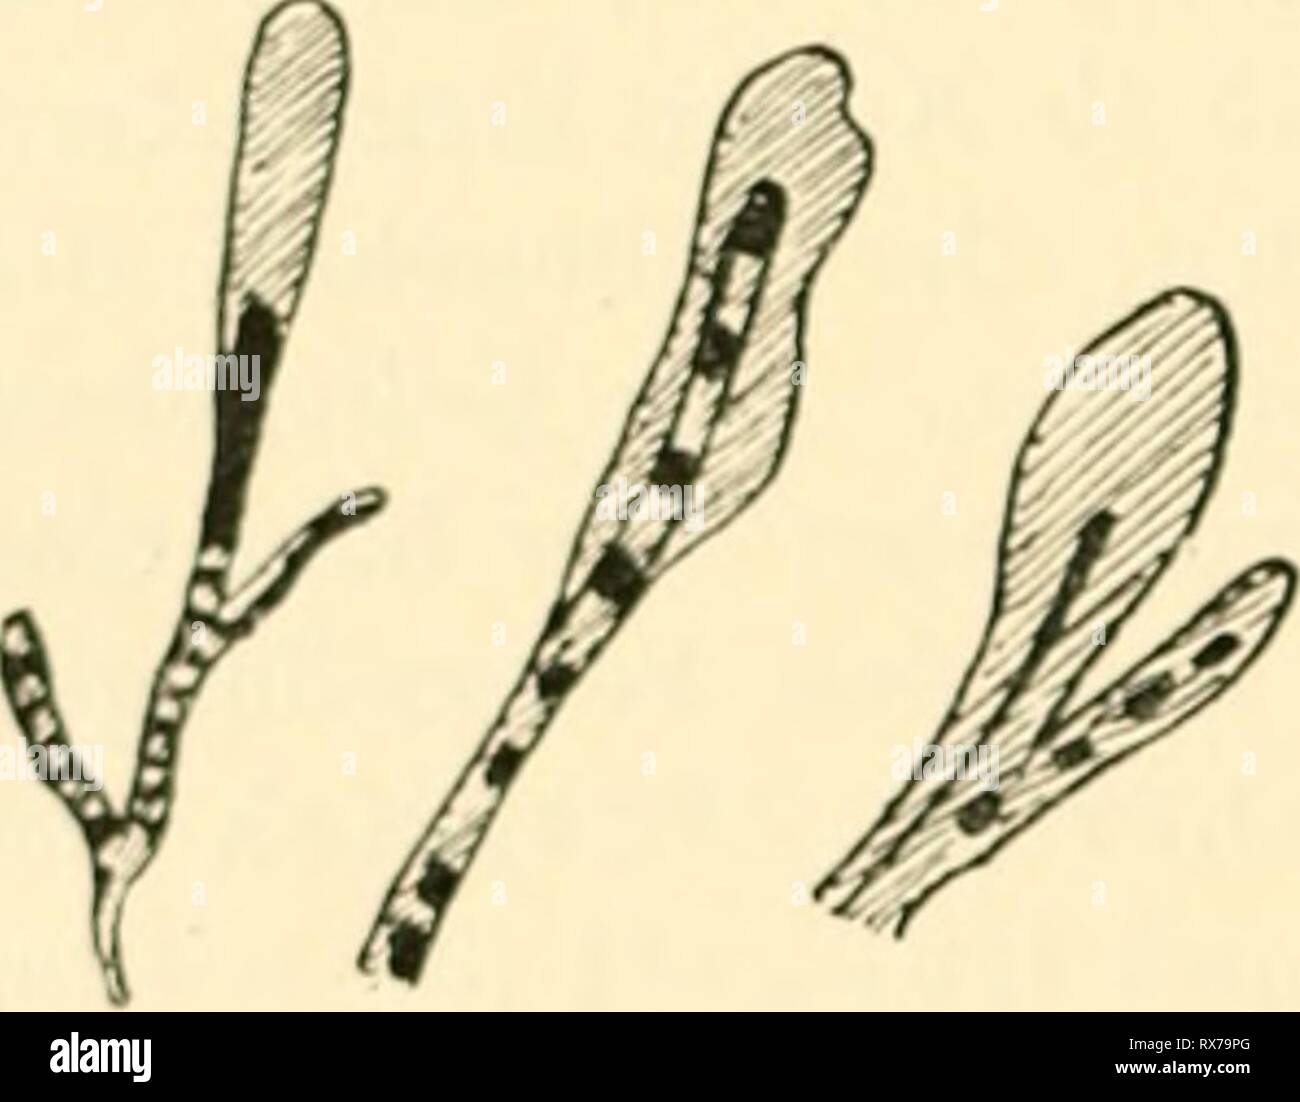 Einfhrung in die Agrikulturmykolgie (1912) Einfhrung in die Agrikulturmykolgie einfhrungindieag00koss Year: 1912  — Mykologie des Düng Dupont (2) u. a. Anaerobe Bakterien wurden insbesondere von Sewerin (3) im Pferdemist gefunden. Auf das Vorkommen von Vibrio- Arten und Spirillen in der Dünger-Jauche weist Kutscher (1) hin. Auch Sarcina-Arten wurden in Mist und Jauche angetroffen, so von Sames il), F. Schönfeld (1) u.a. Bedeutung kommt auch den im Dünger befindlichen Strahlenpilzen (Aktinomyceten) zu. Solche wurden daraus z. B. von Sewerin (4| und von Tsiklinsky ili isoliert. J. Choutkevitsch  Stock Photo